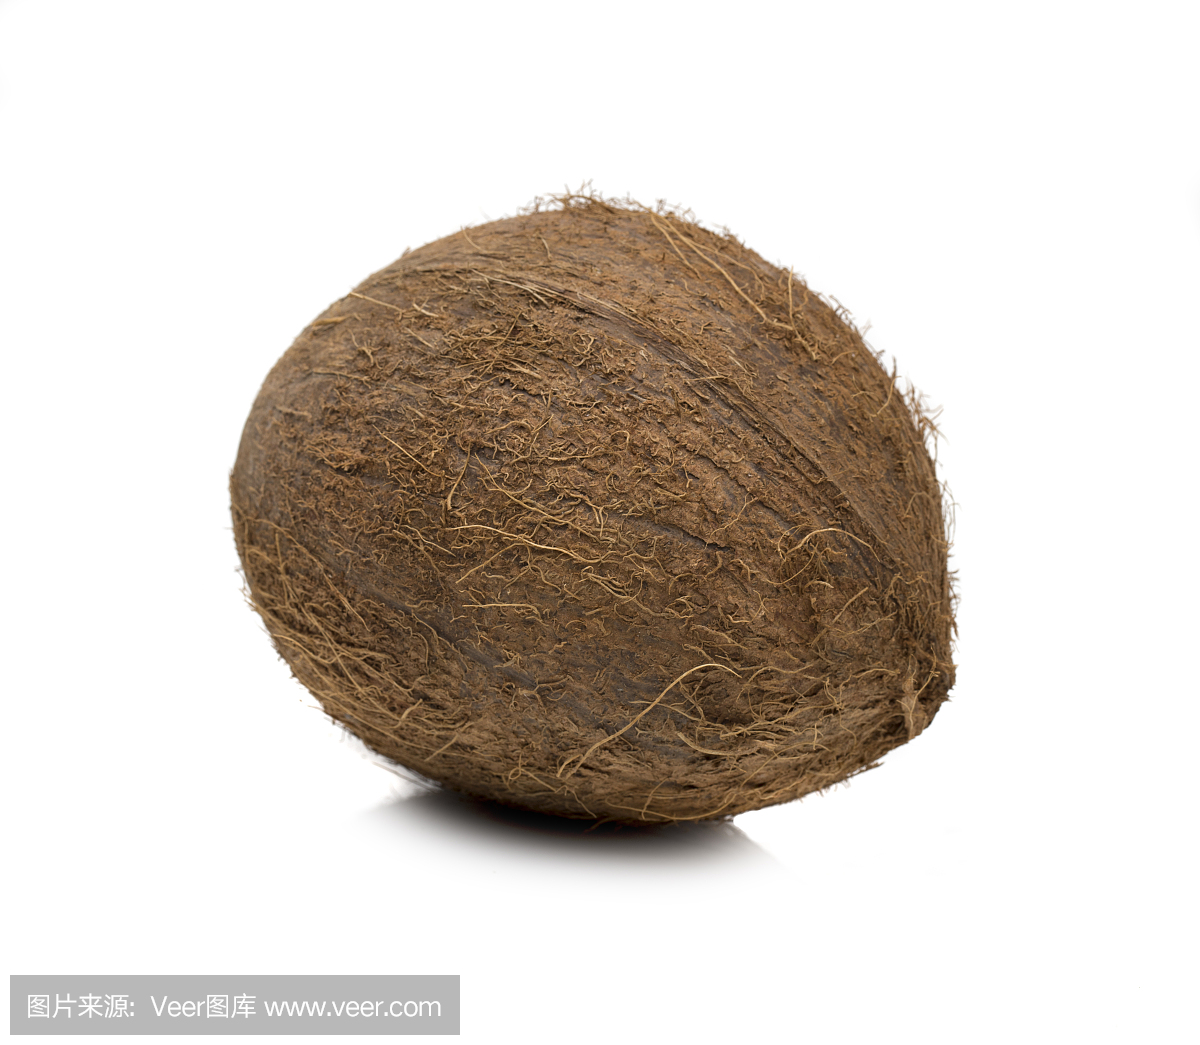 成熟的椰子在白色背景上的照片。